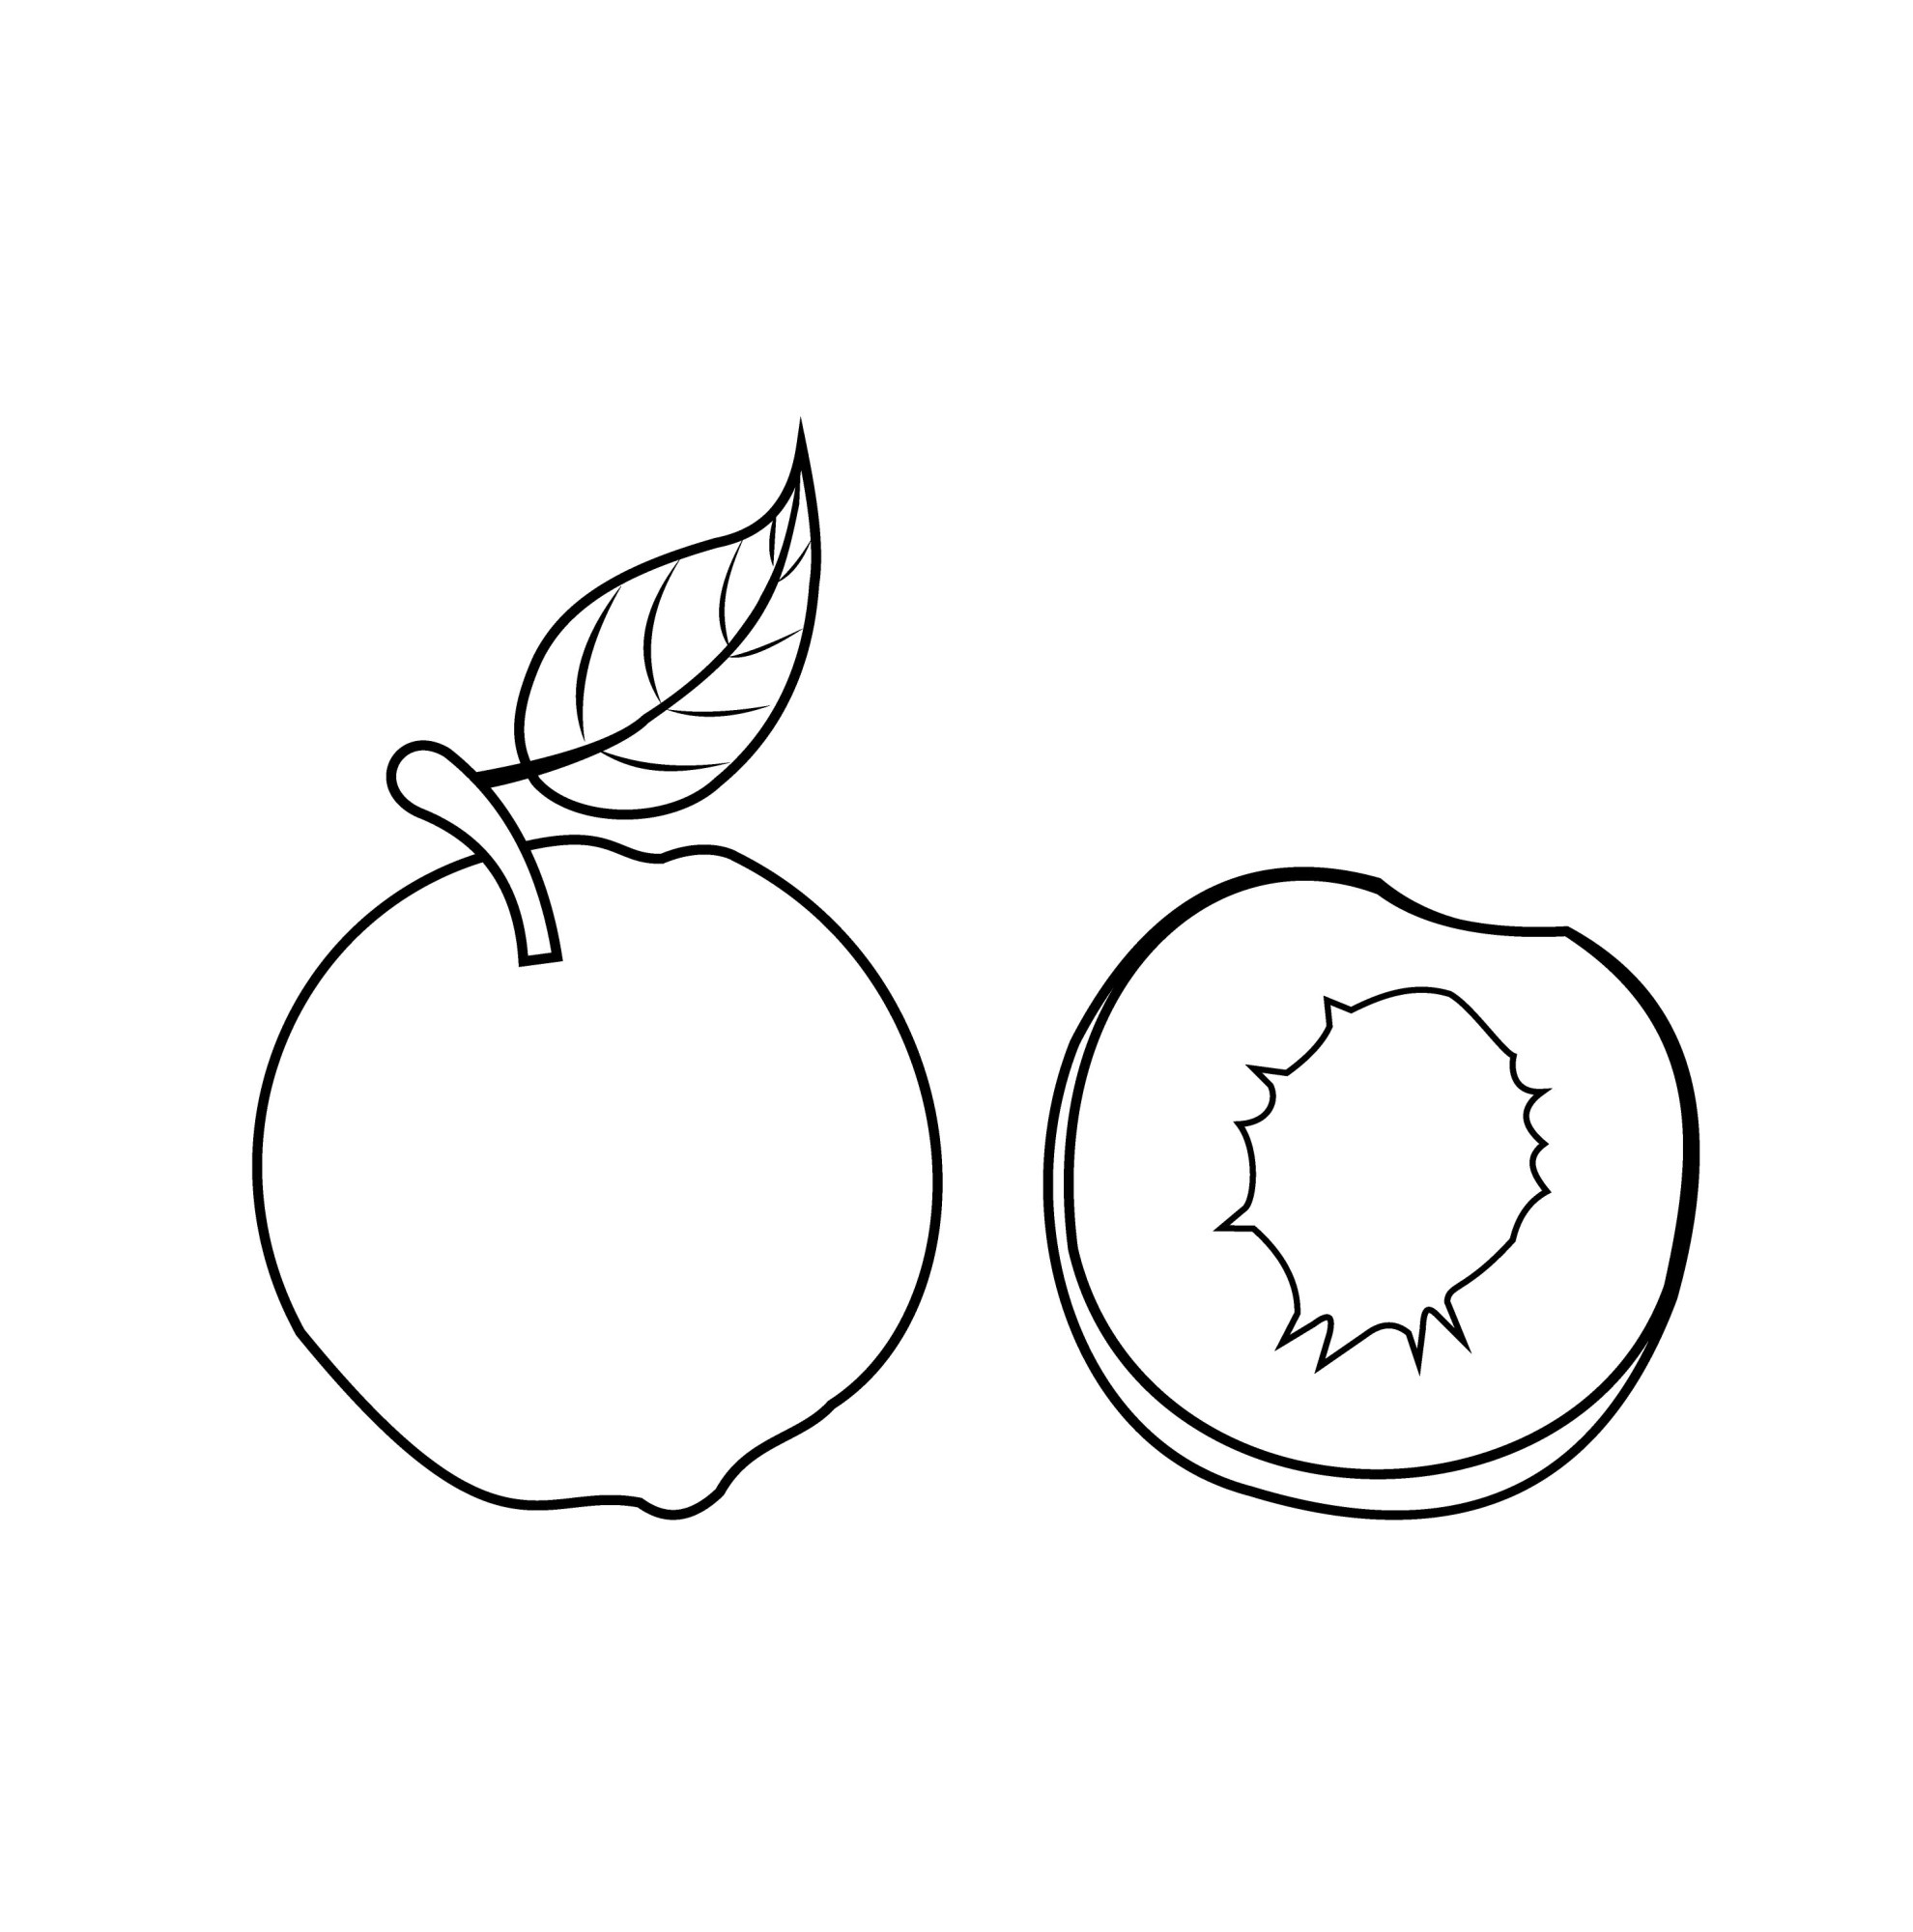 Раскраска для детей: сладкий персик с половинкой